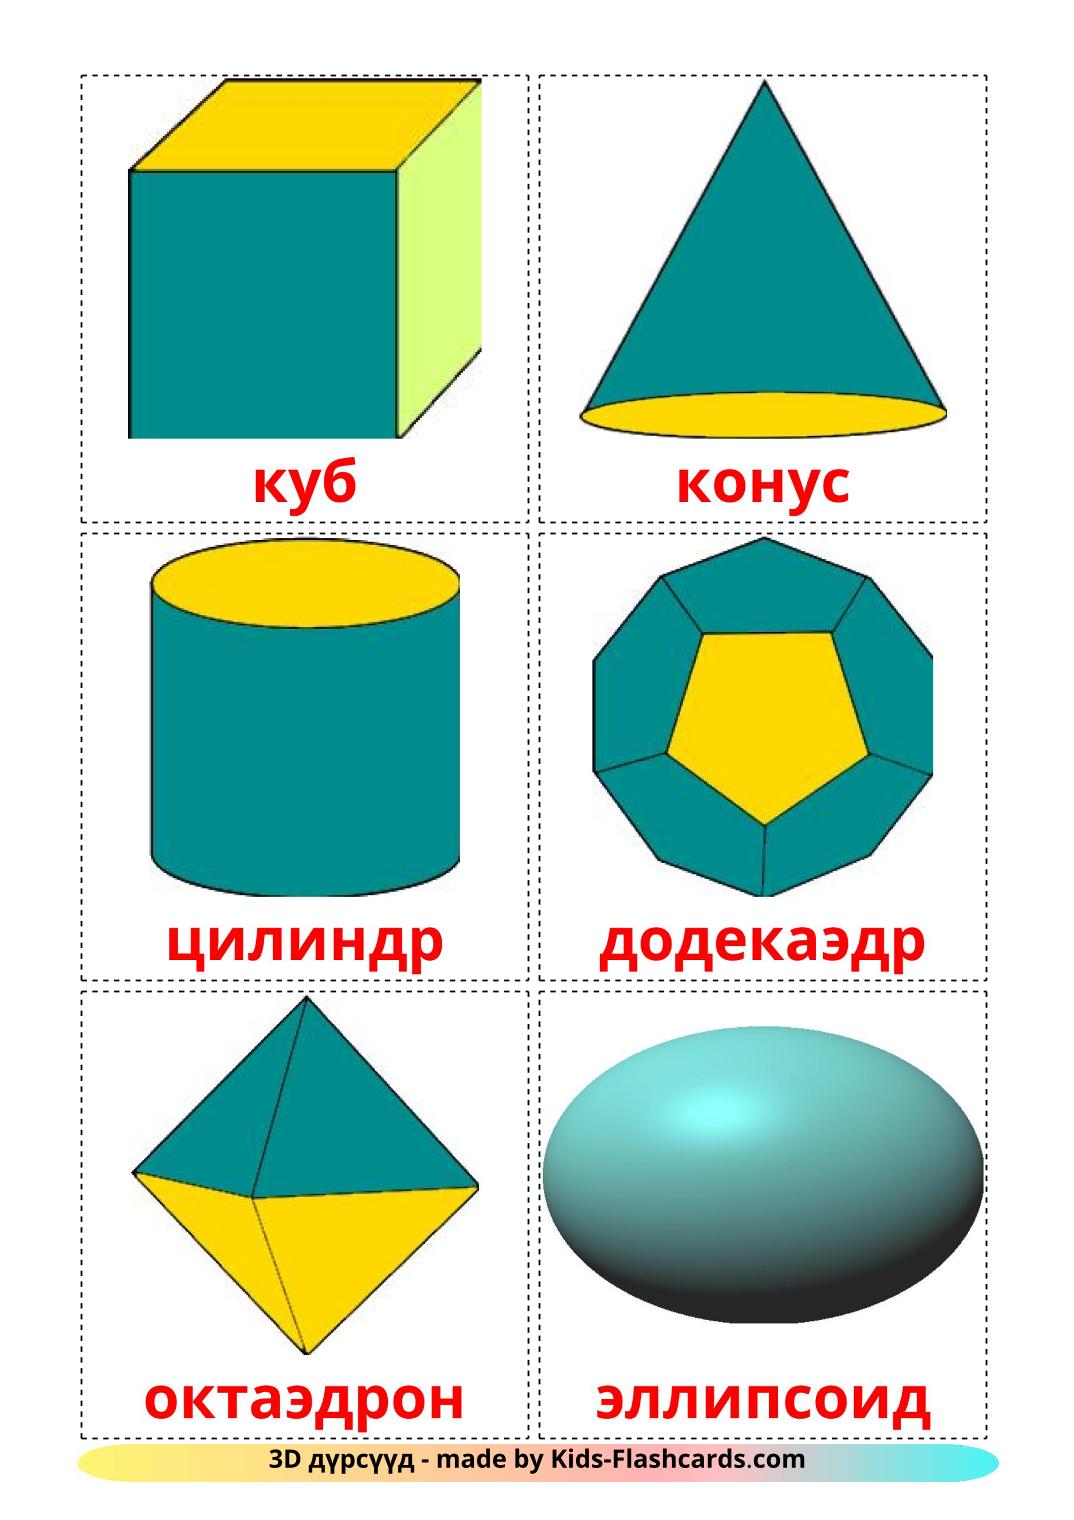 Formas 3D - 17 fichas de mongol para imprimir gratis 